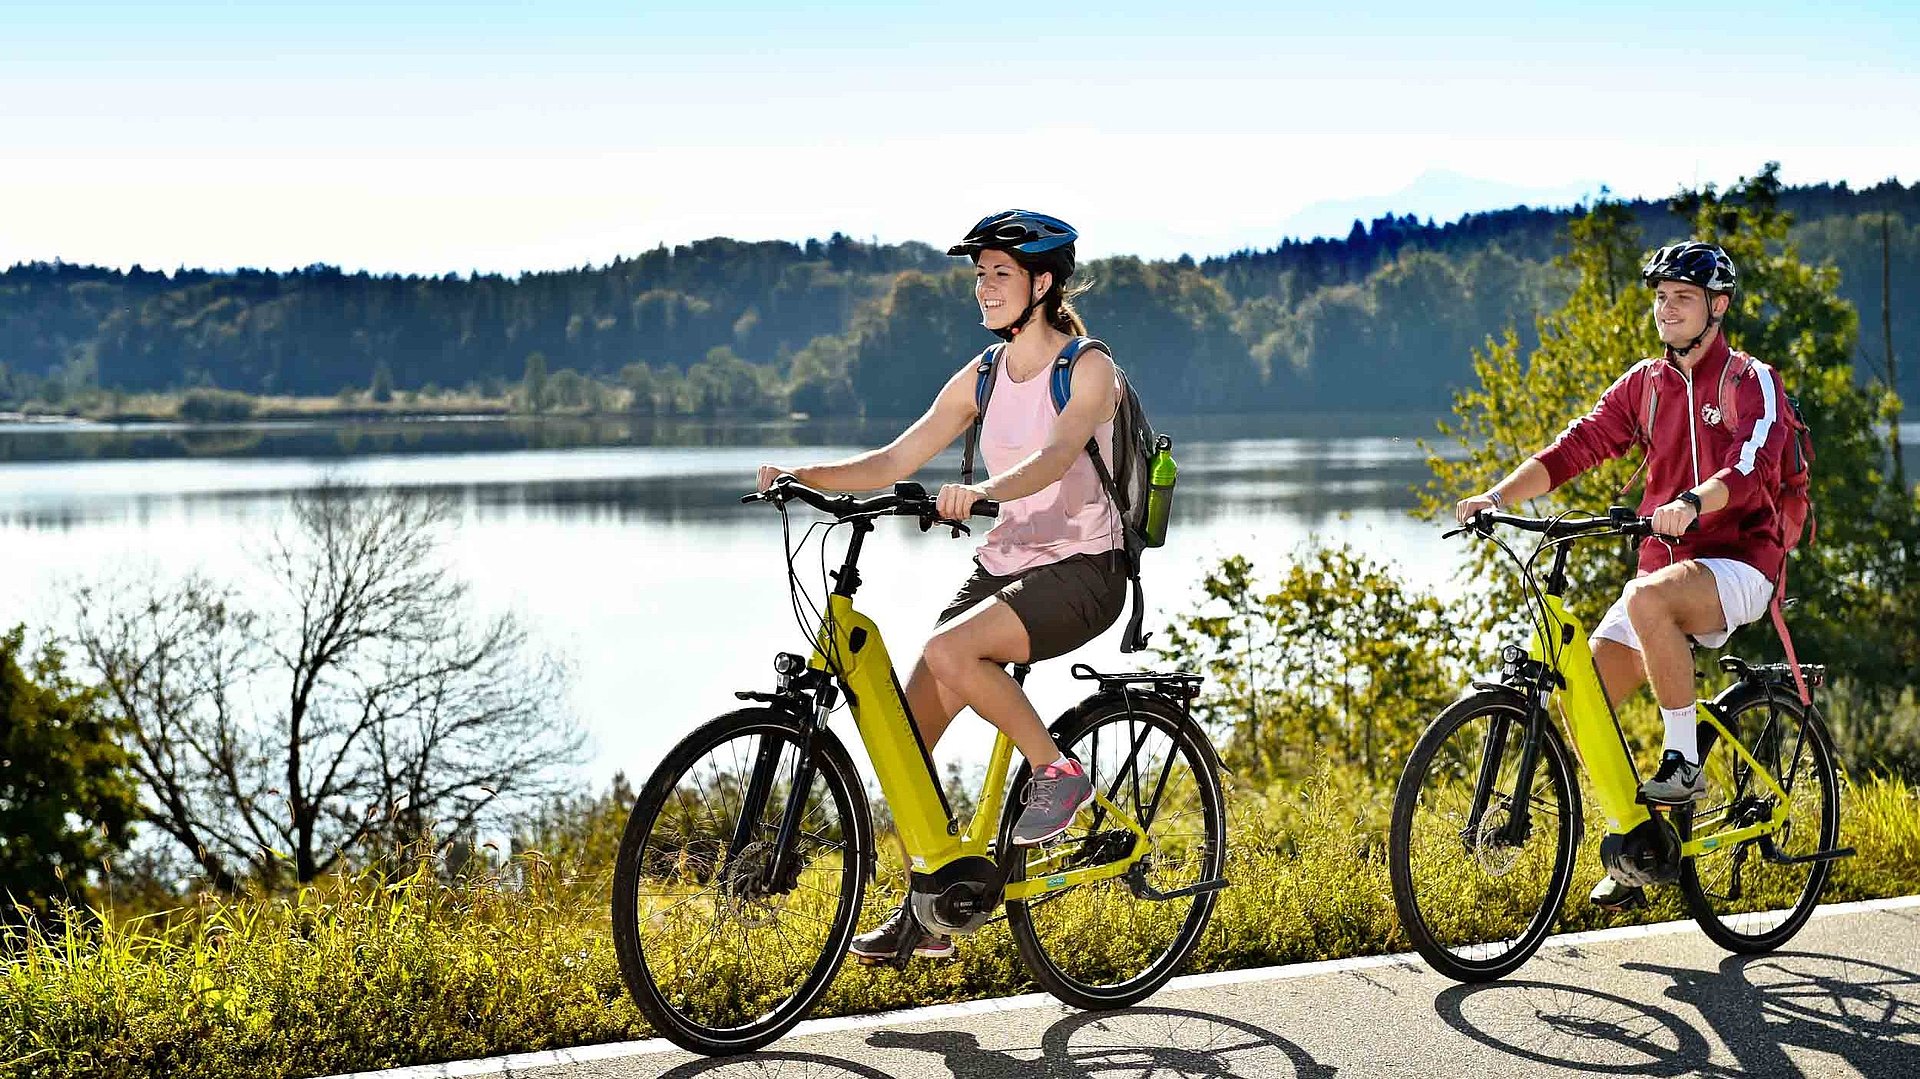 Freizeit und Sport in Mittelfranken - zwei Radfahrer mit E-Bike fahren auf Radweg bei sonnigem Wetter an einem See vorbei; Waldlandschaft im Hintergrund